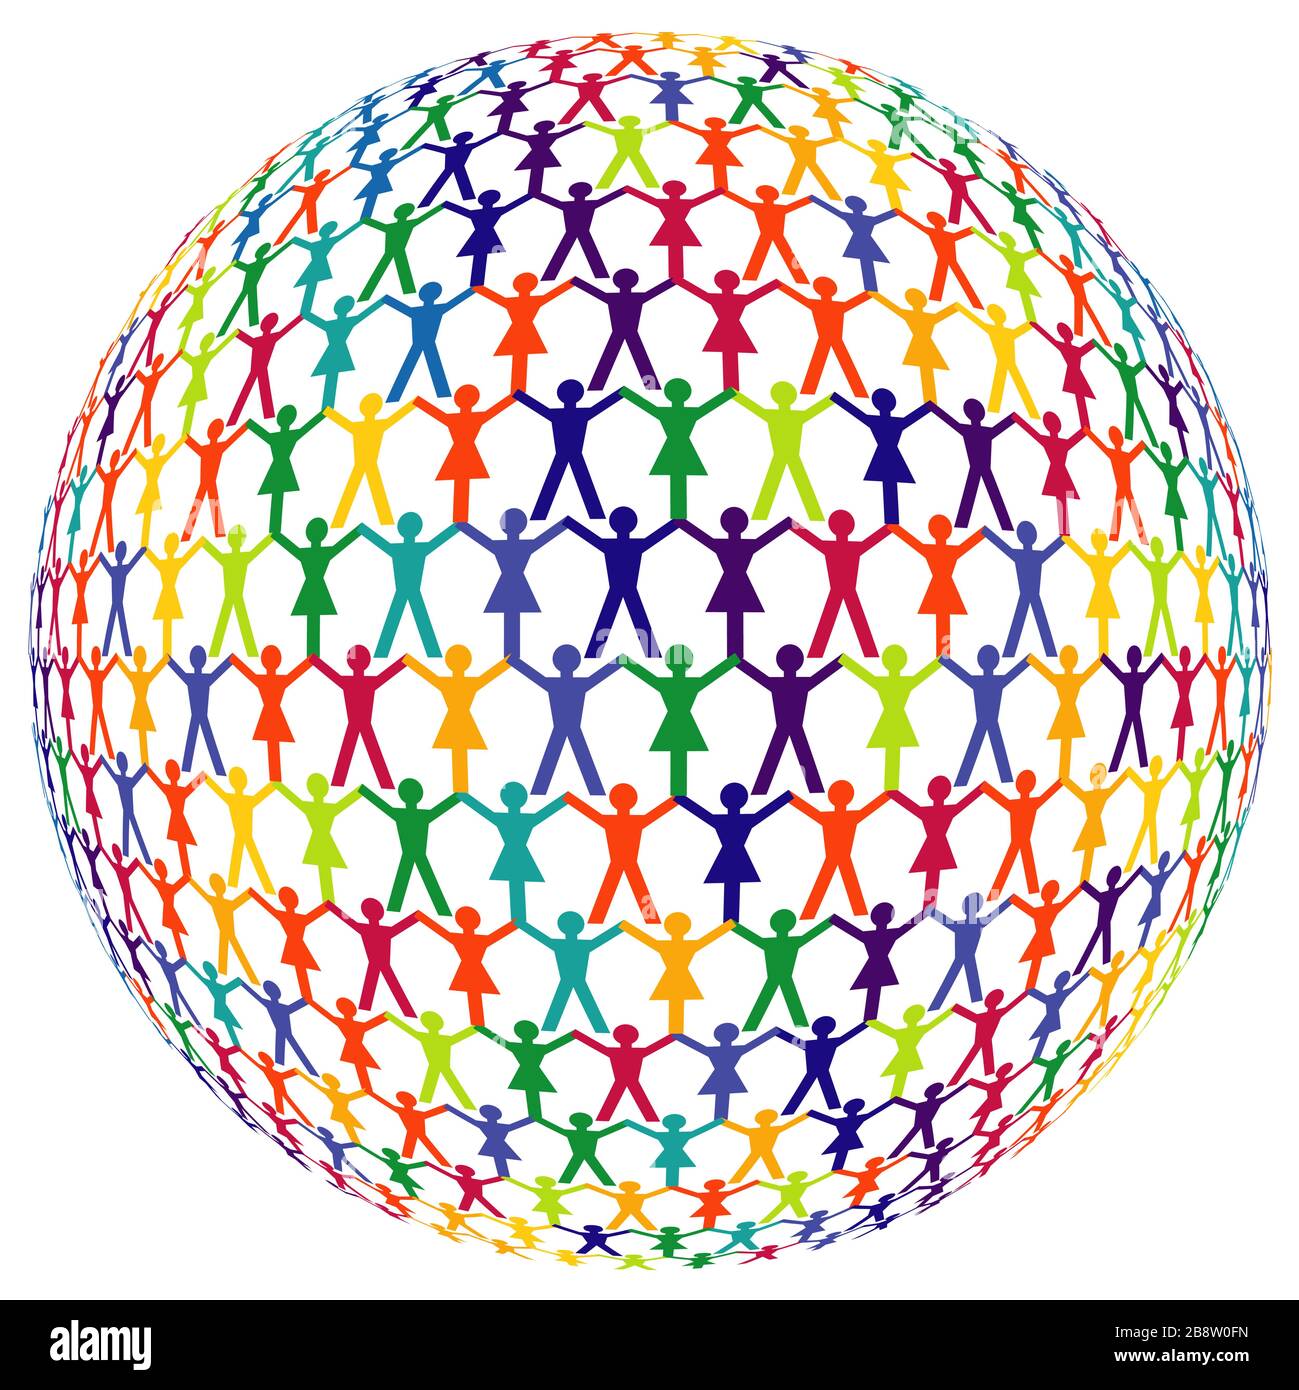 Un groupe de personnes en forme de globe, isolé sur un fond blanc. - illustration vectorielle Illustration de Vecteur